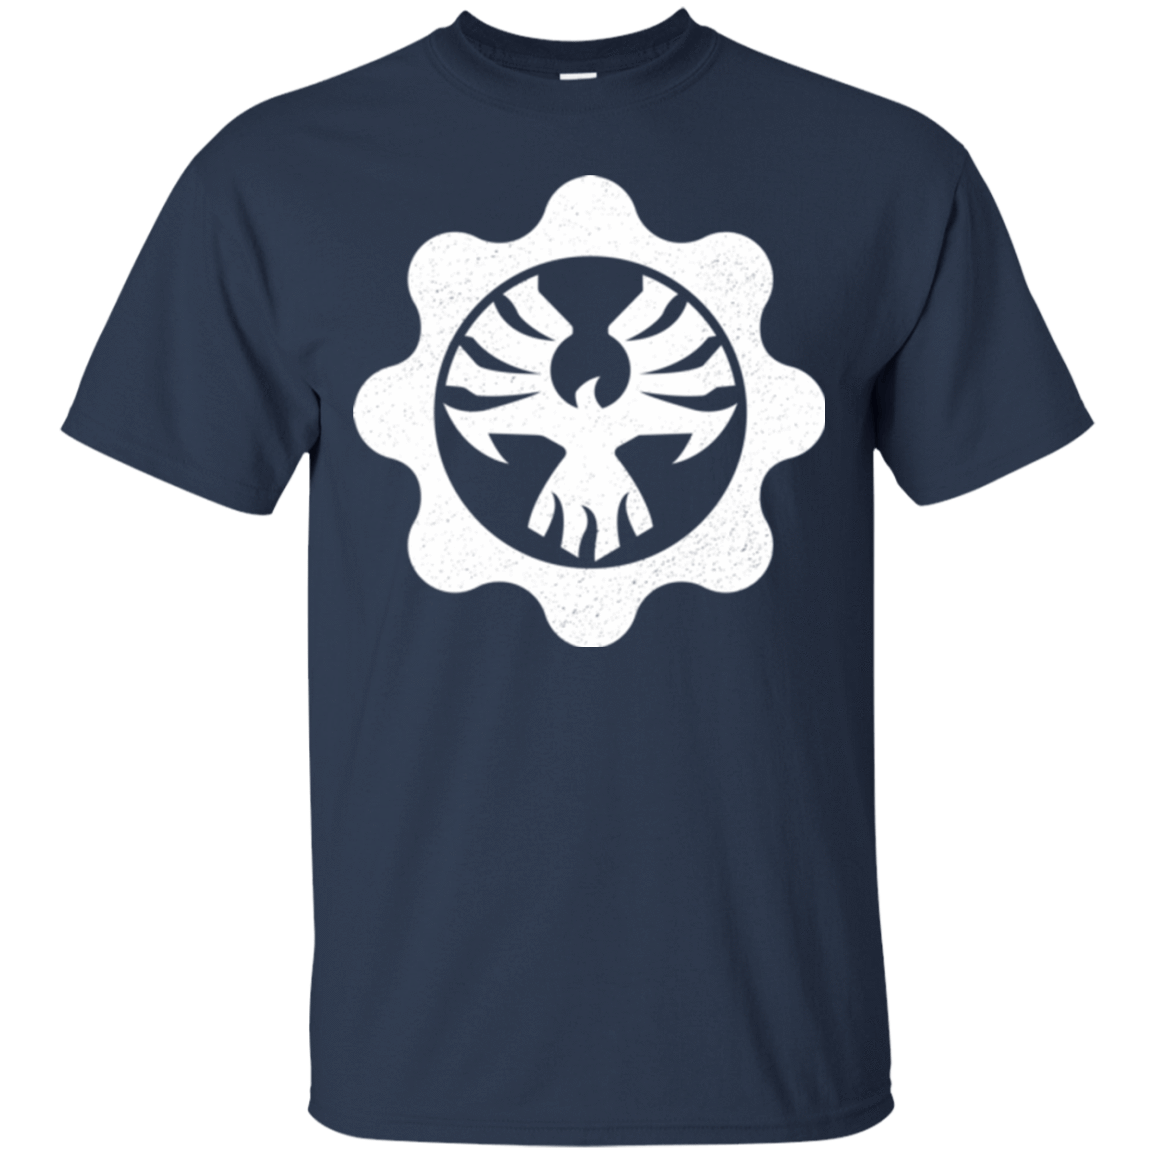 T-Shirts Navy / Small Gears of War 4 Cog Emblem T-Shirt